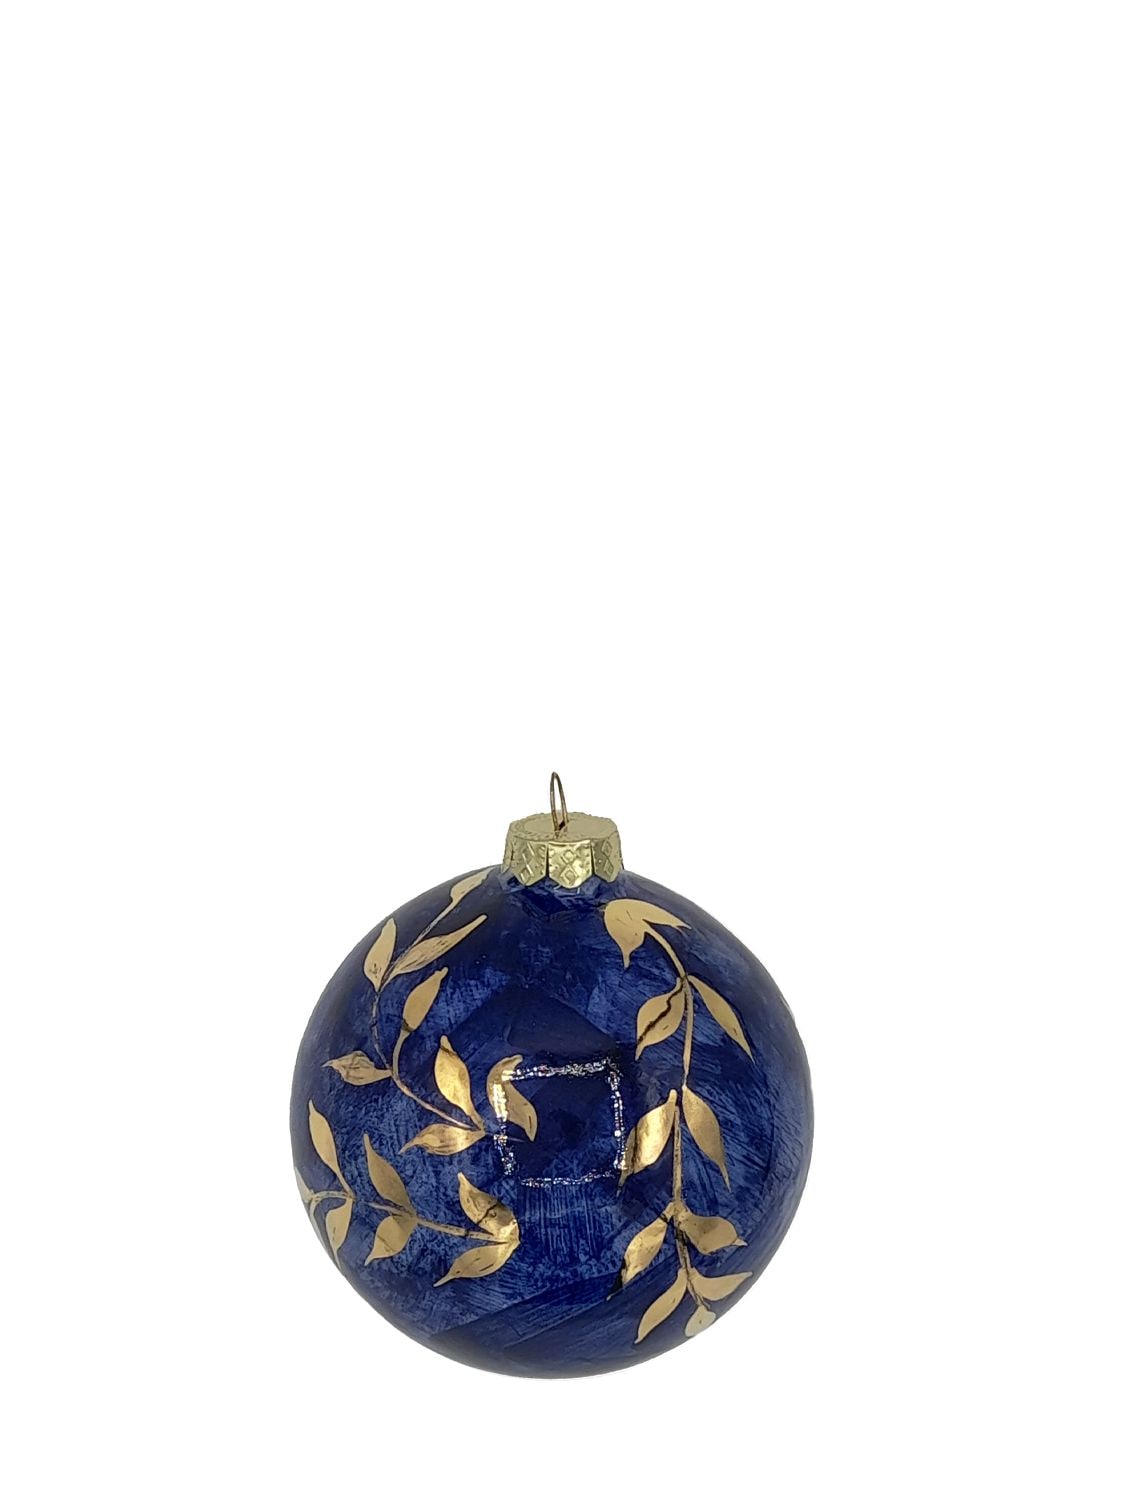 Les Ottomans Porcelain Christmas Ornament In Blue